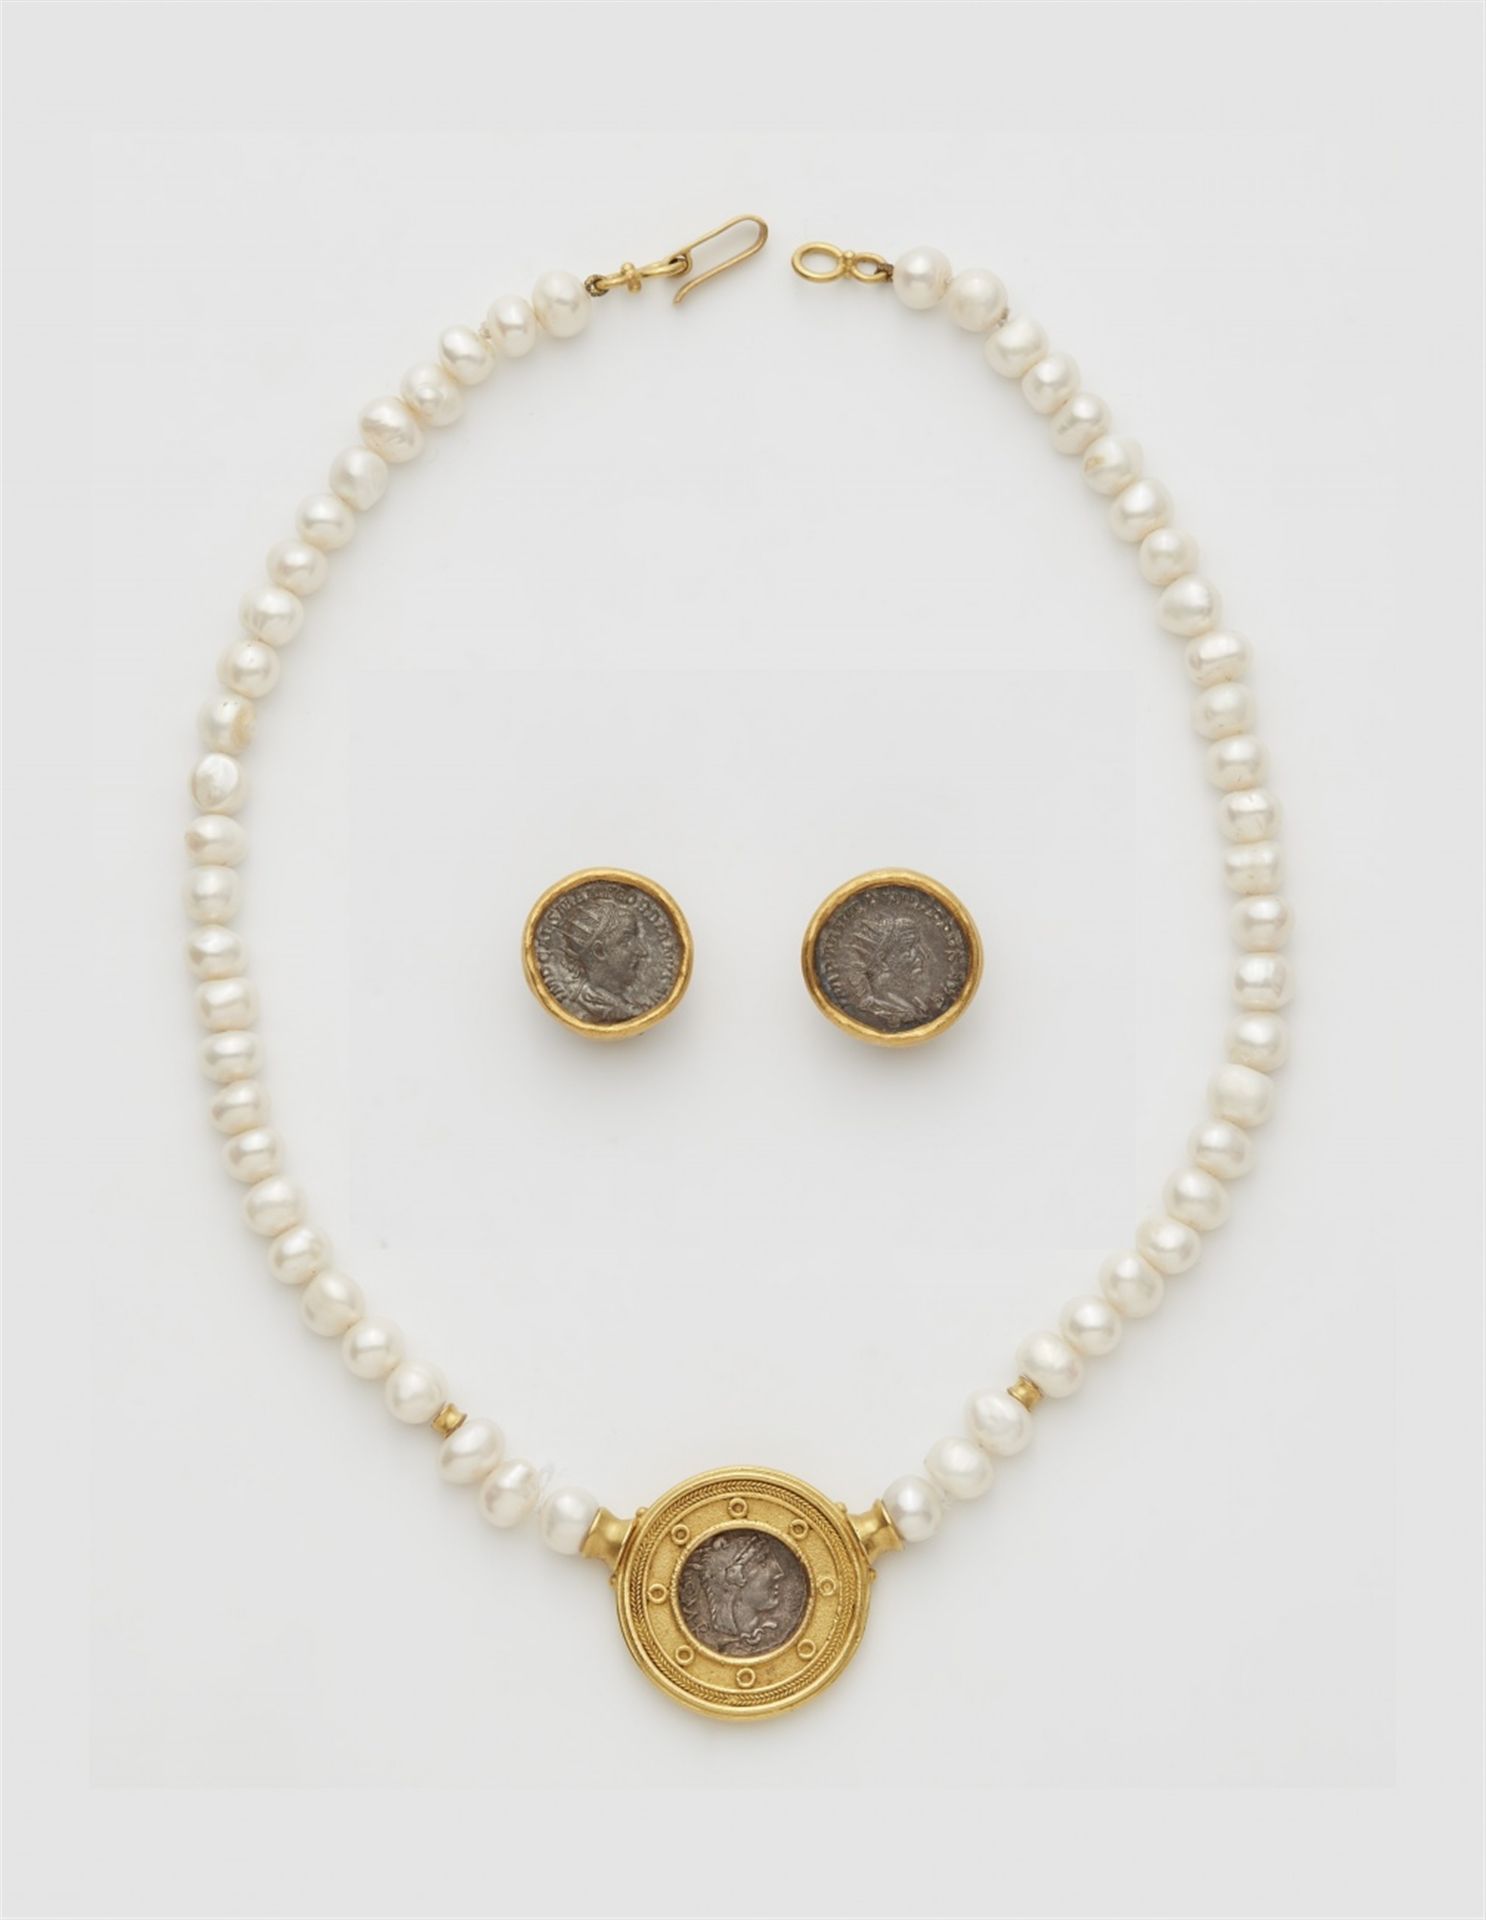 Garnitur mit antiken Silbermünzen